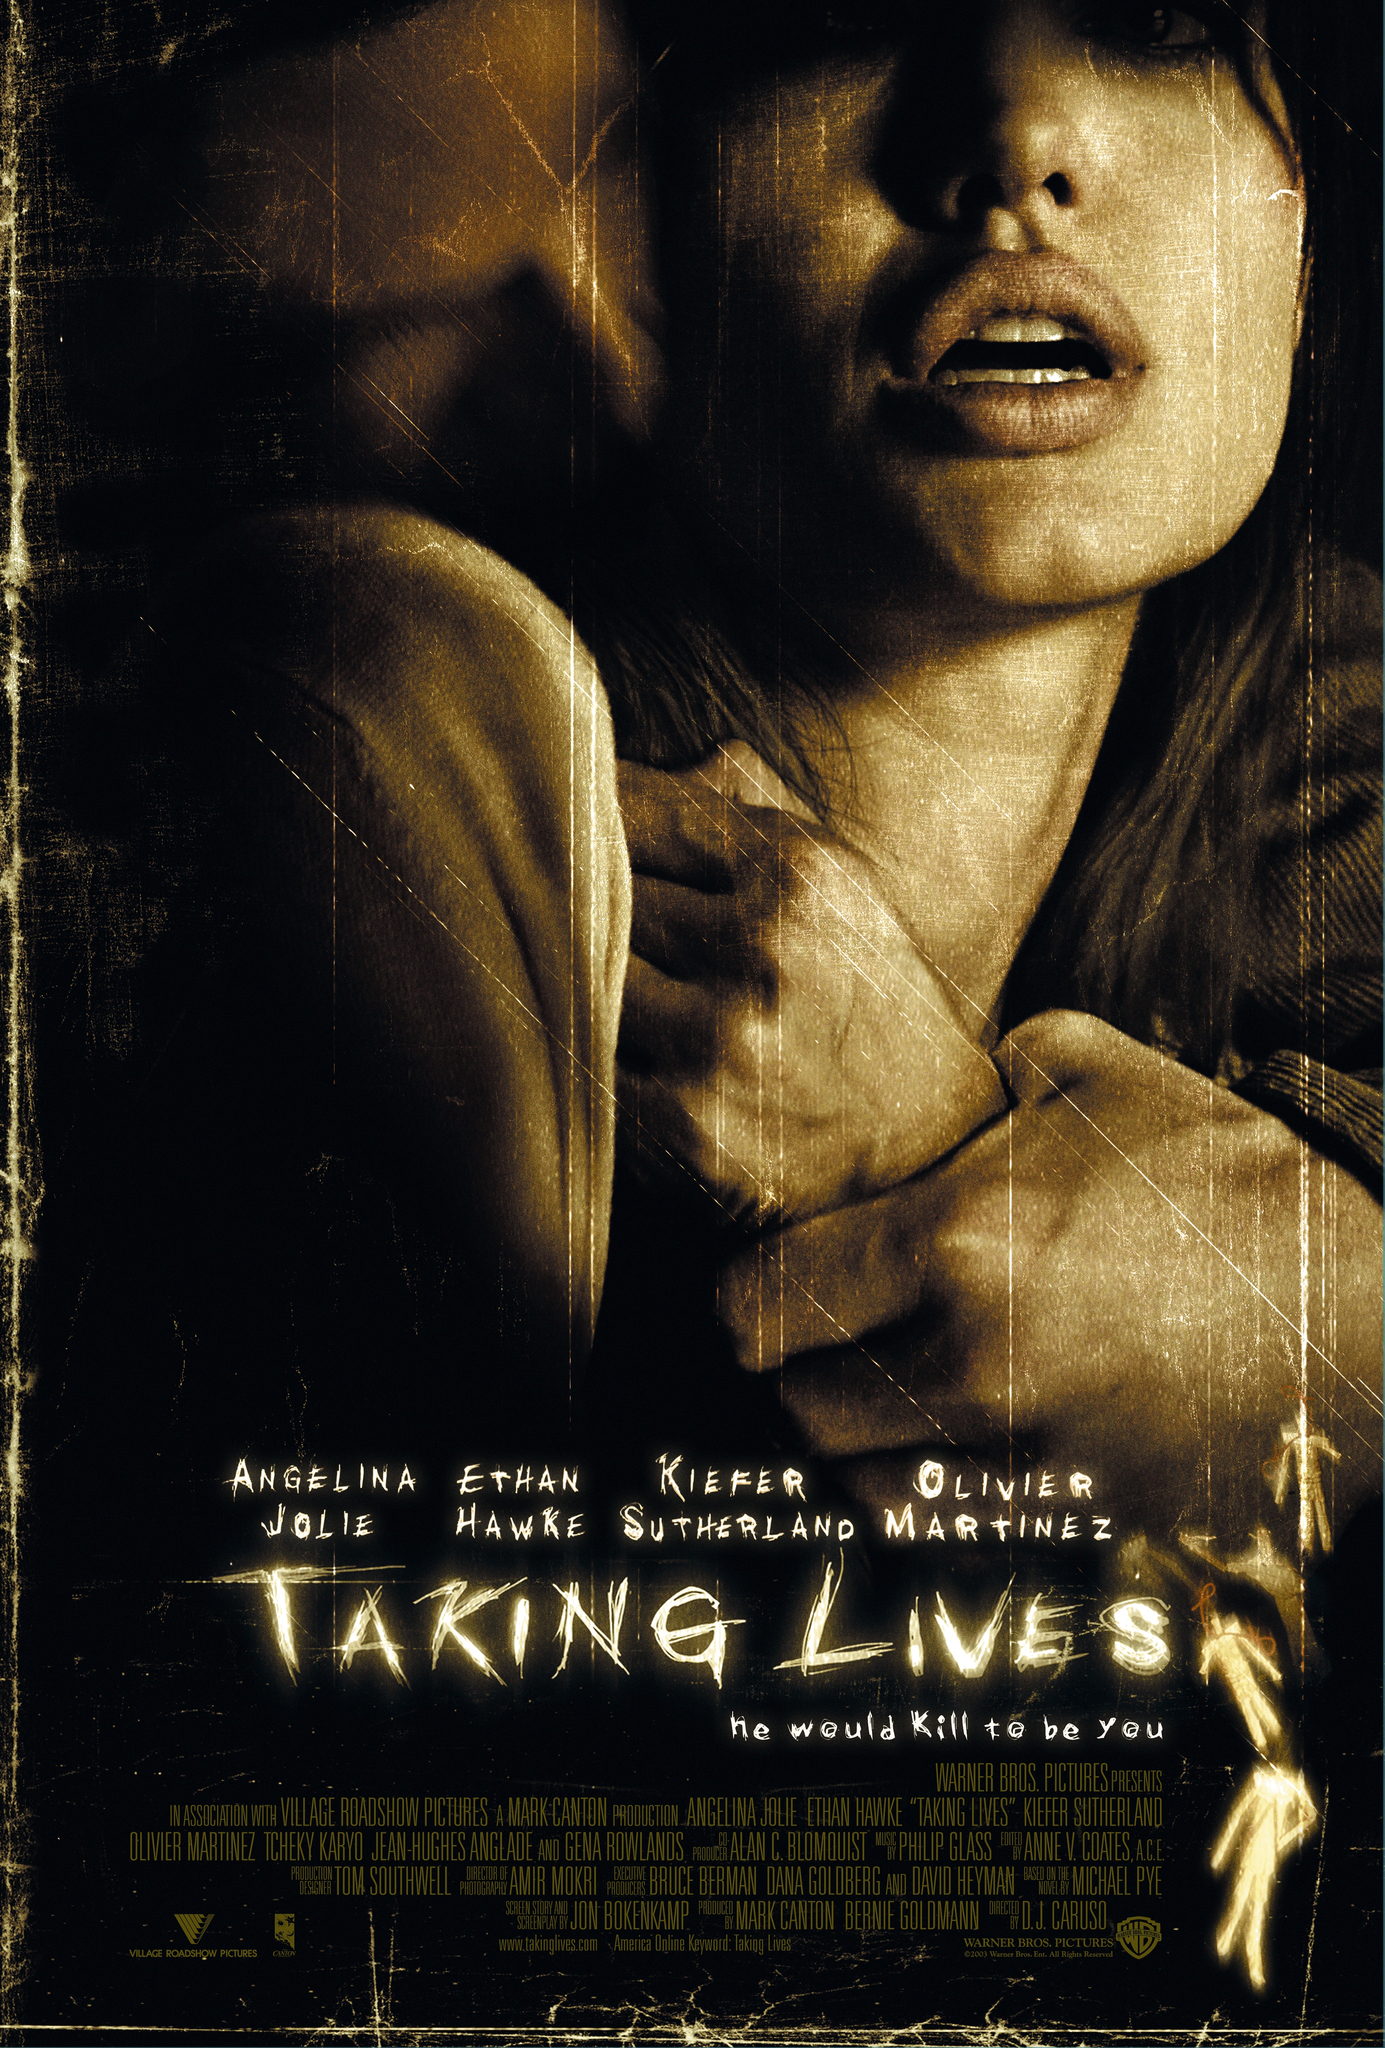 ดูหนังออนไลน์ฟรี Taking Lives (2004) สวมรอยฆ่า หนังมาสเตอร์ หนังเต็มเรื่อง ดูหนังฟรีออนไลน์ ดูหนังออนไลน์ หนังออนไลน์ ดูหนังใหม่ หนังพากย์ไทย หนังซับไทย ดูฟรีHD